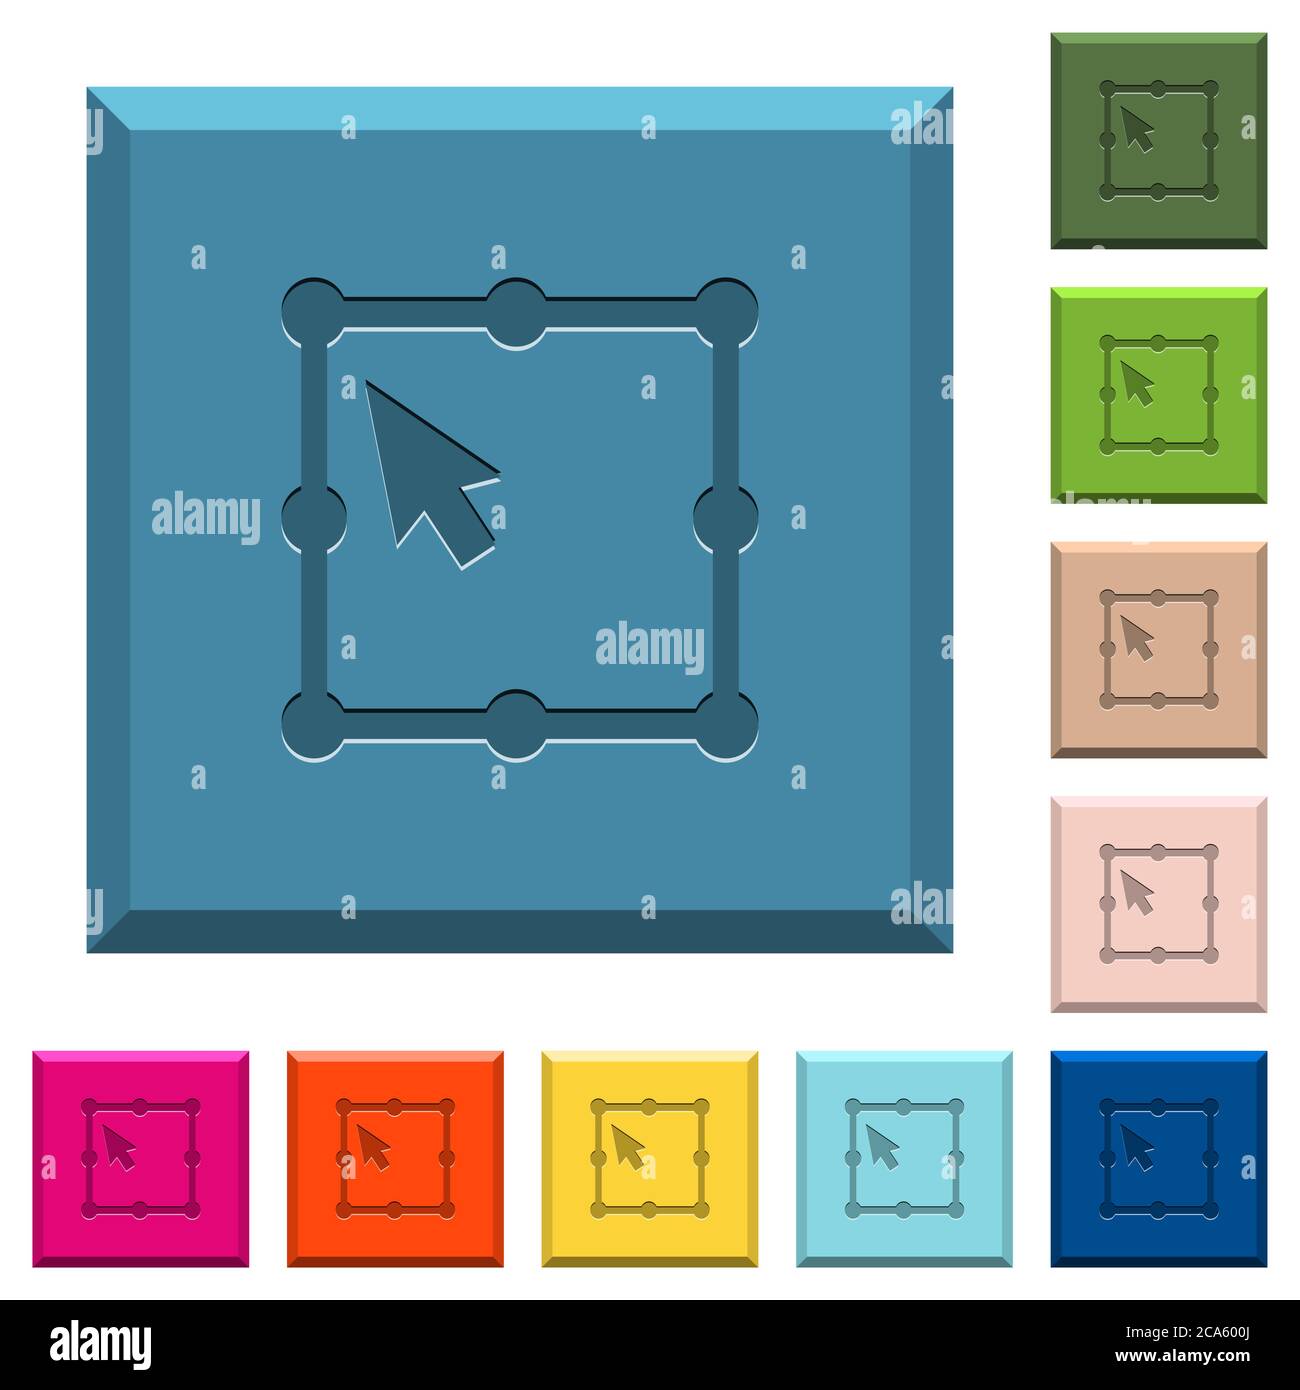 Free Transform oggetto inciso icone su bordi quadrati bottoni in vari colori trendy Illustrazione Vettoriale